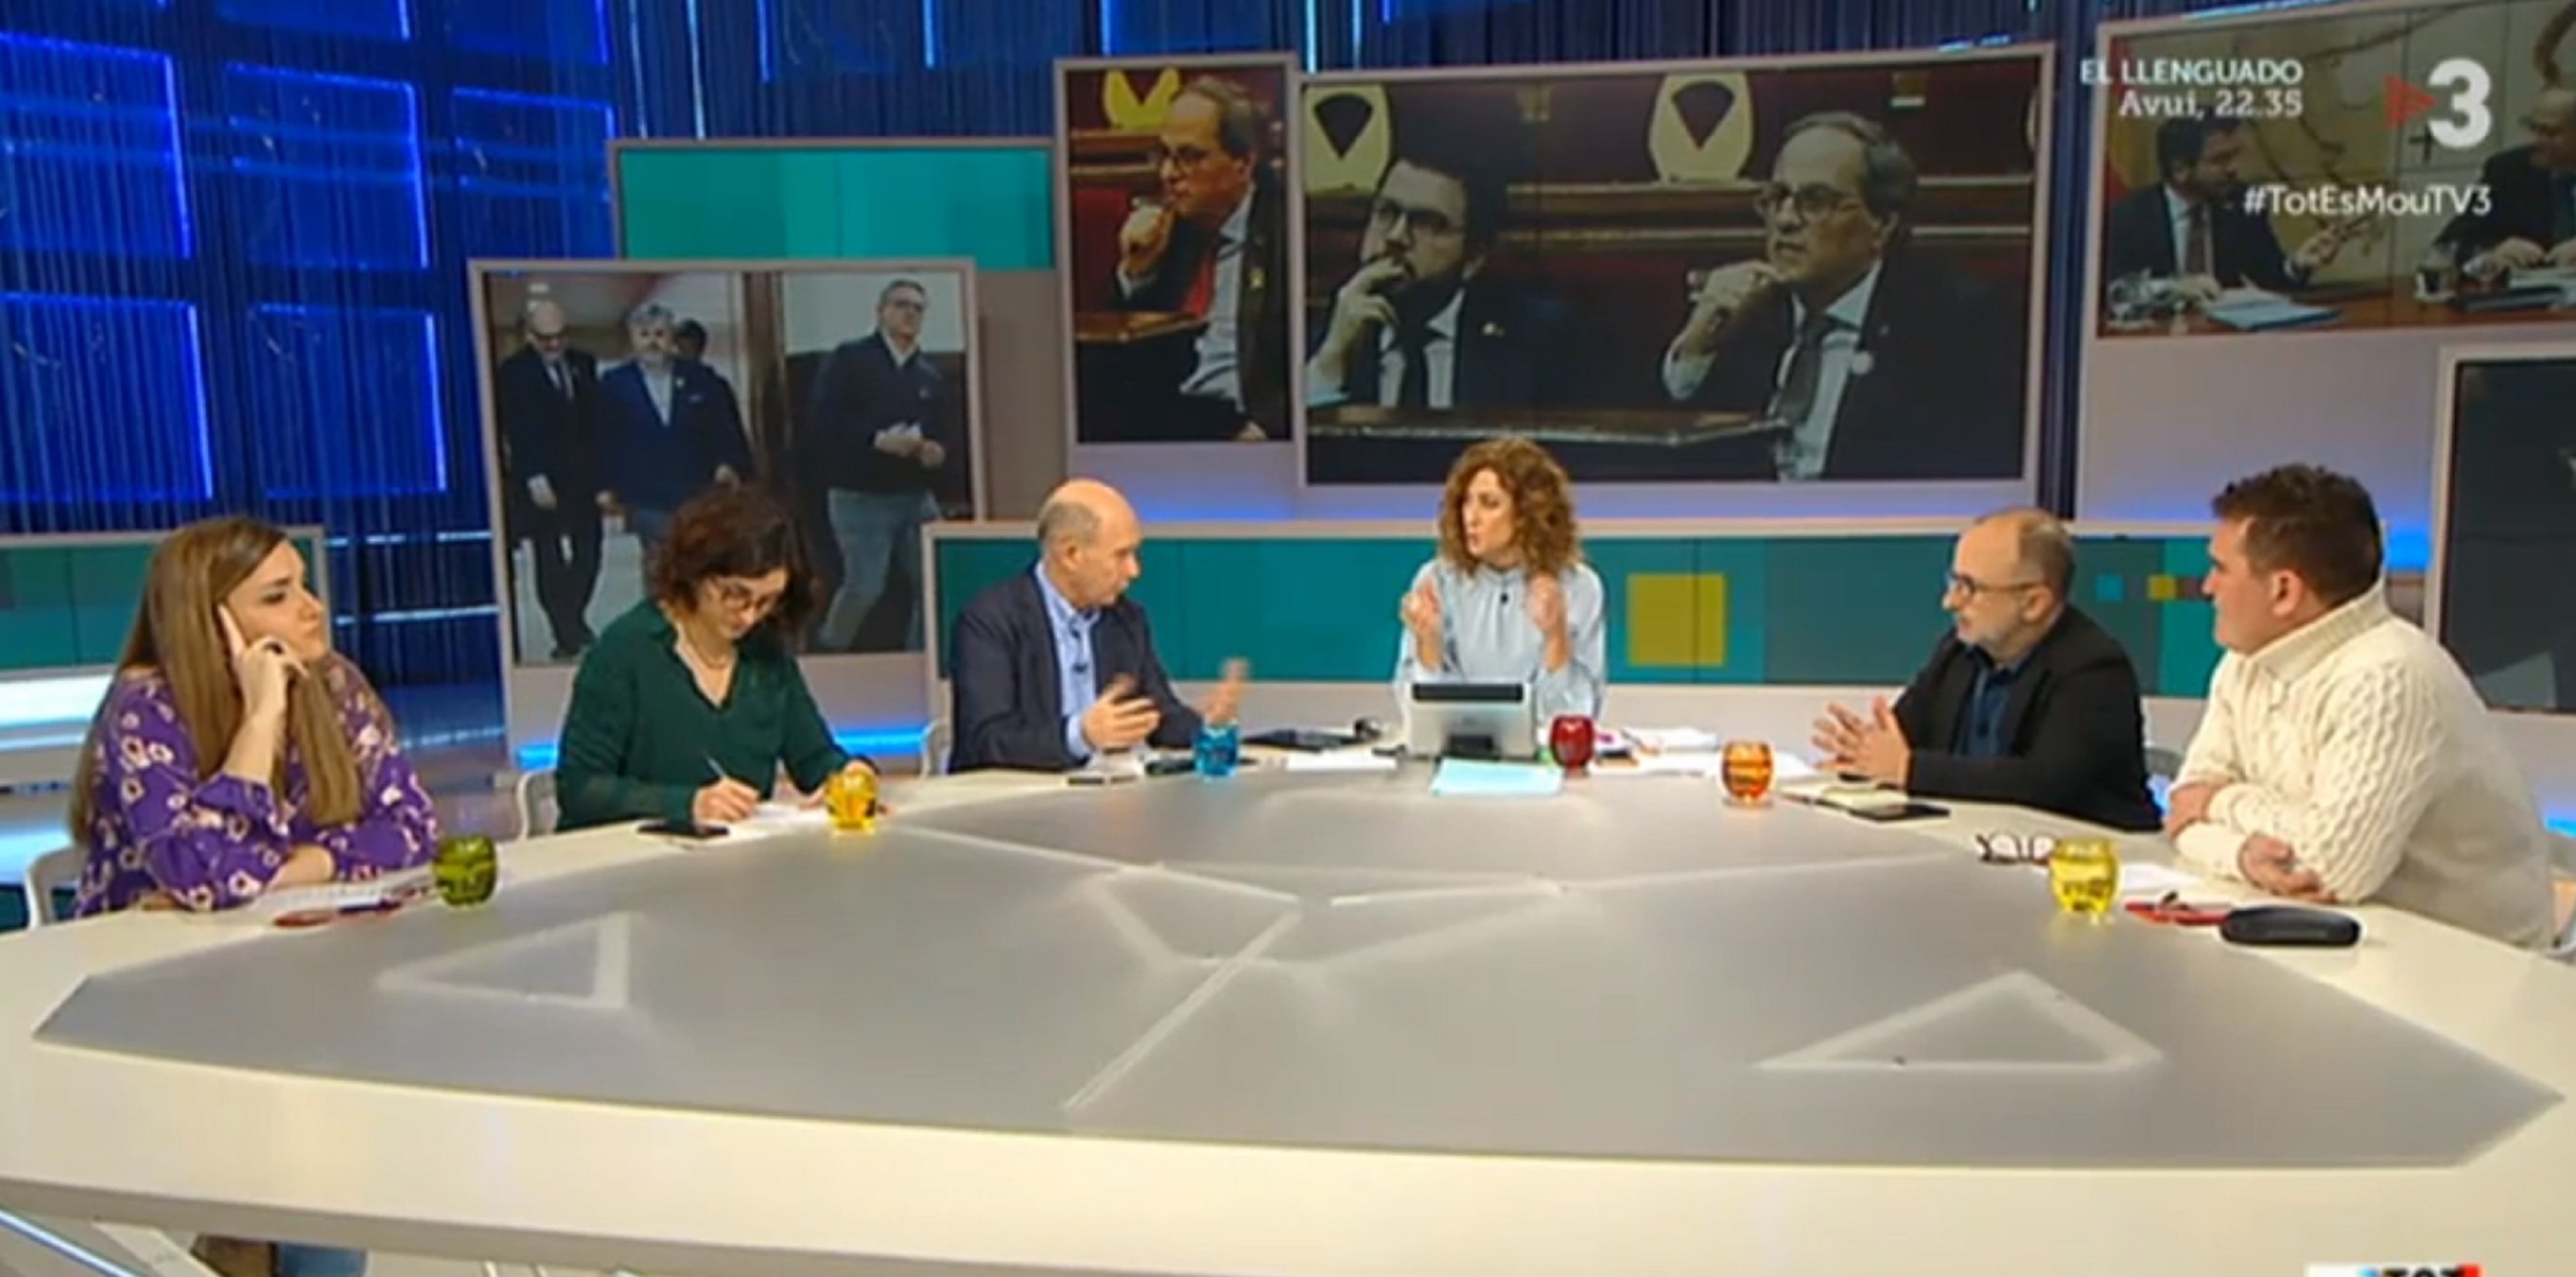 TV3 en precampaña electoral y twitter encendido: "Ningún tertuliano pro-Torra!"